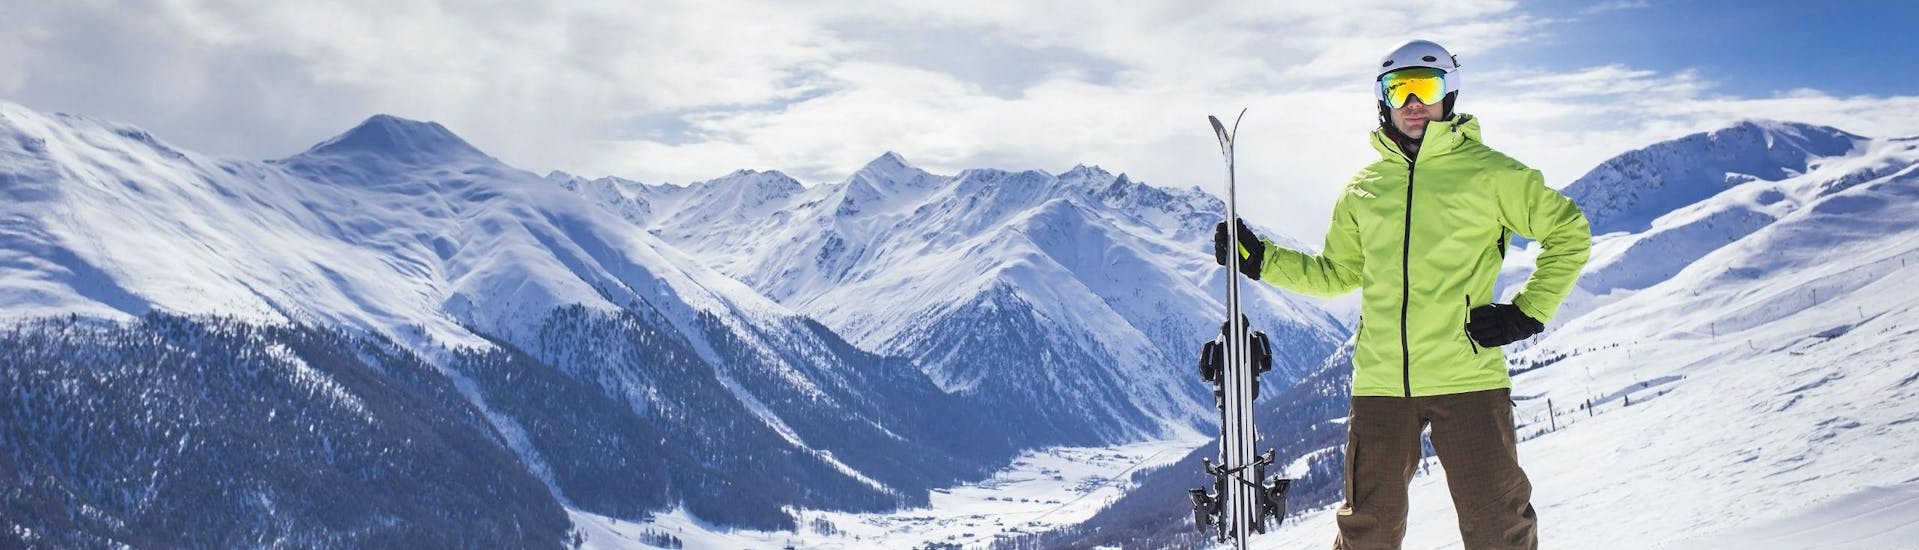 Ein Skifahrer posiert auf einer Skipiste in Livigno mit Blick vom Berg hinunter auf das schneebedeckte Tal.